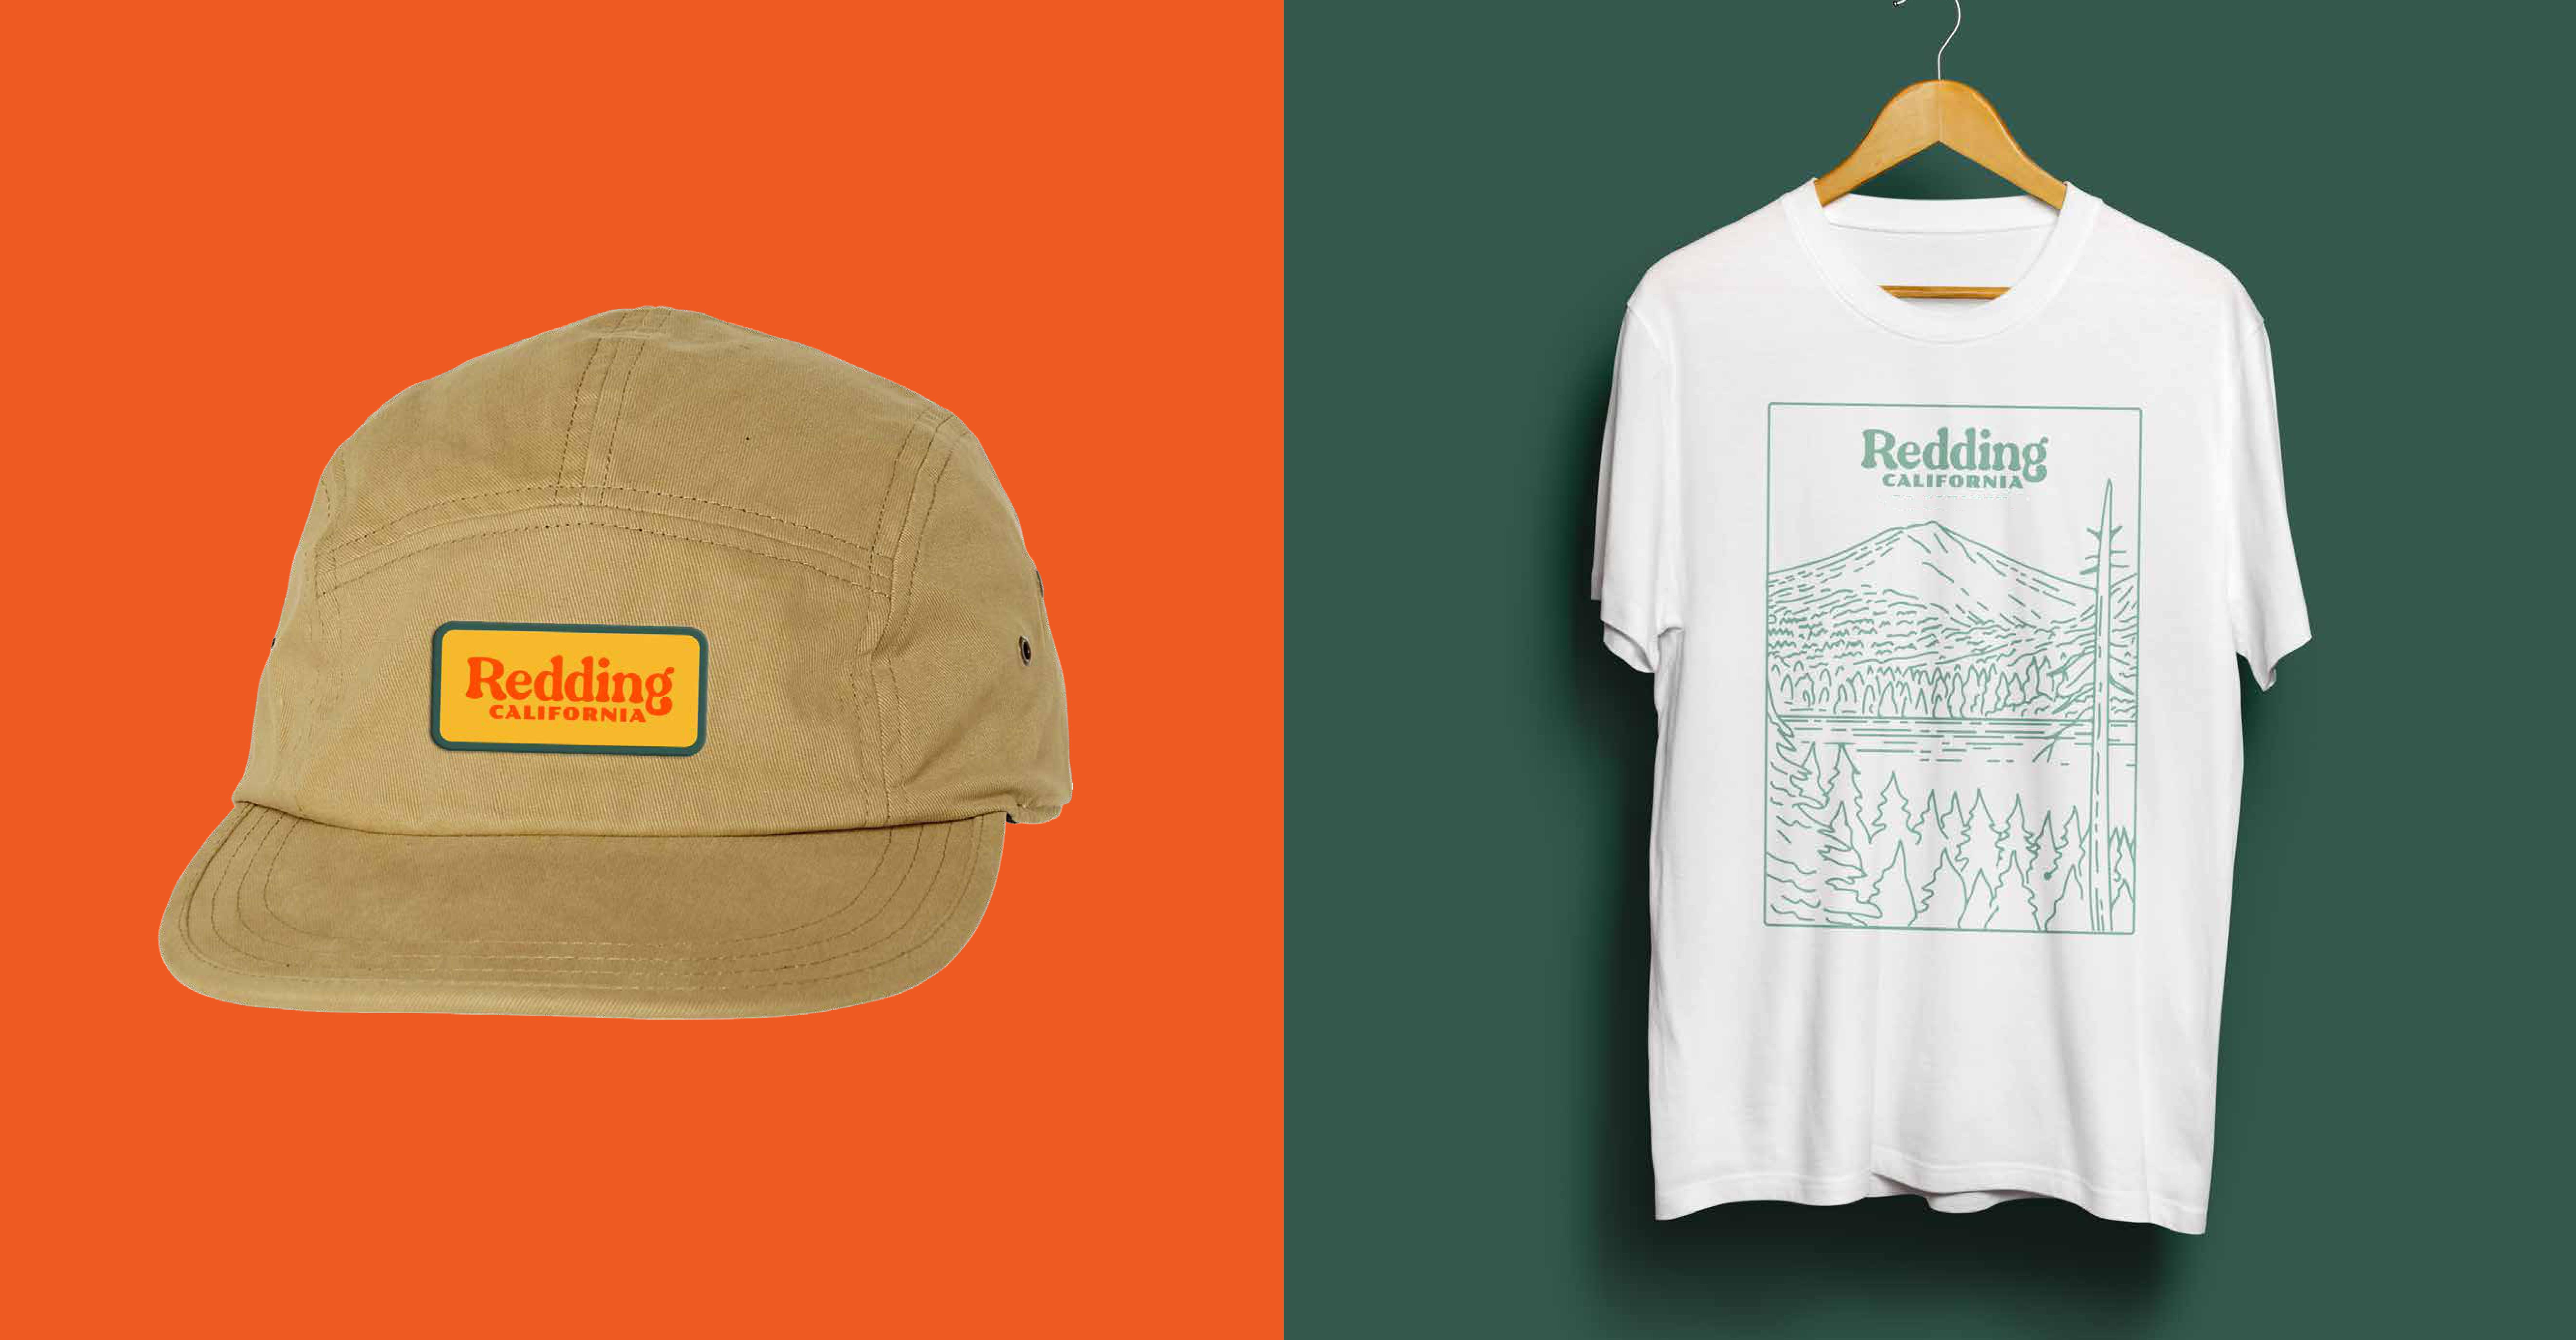 Visit Redding branded hat and t-shirt mockup